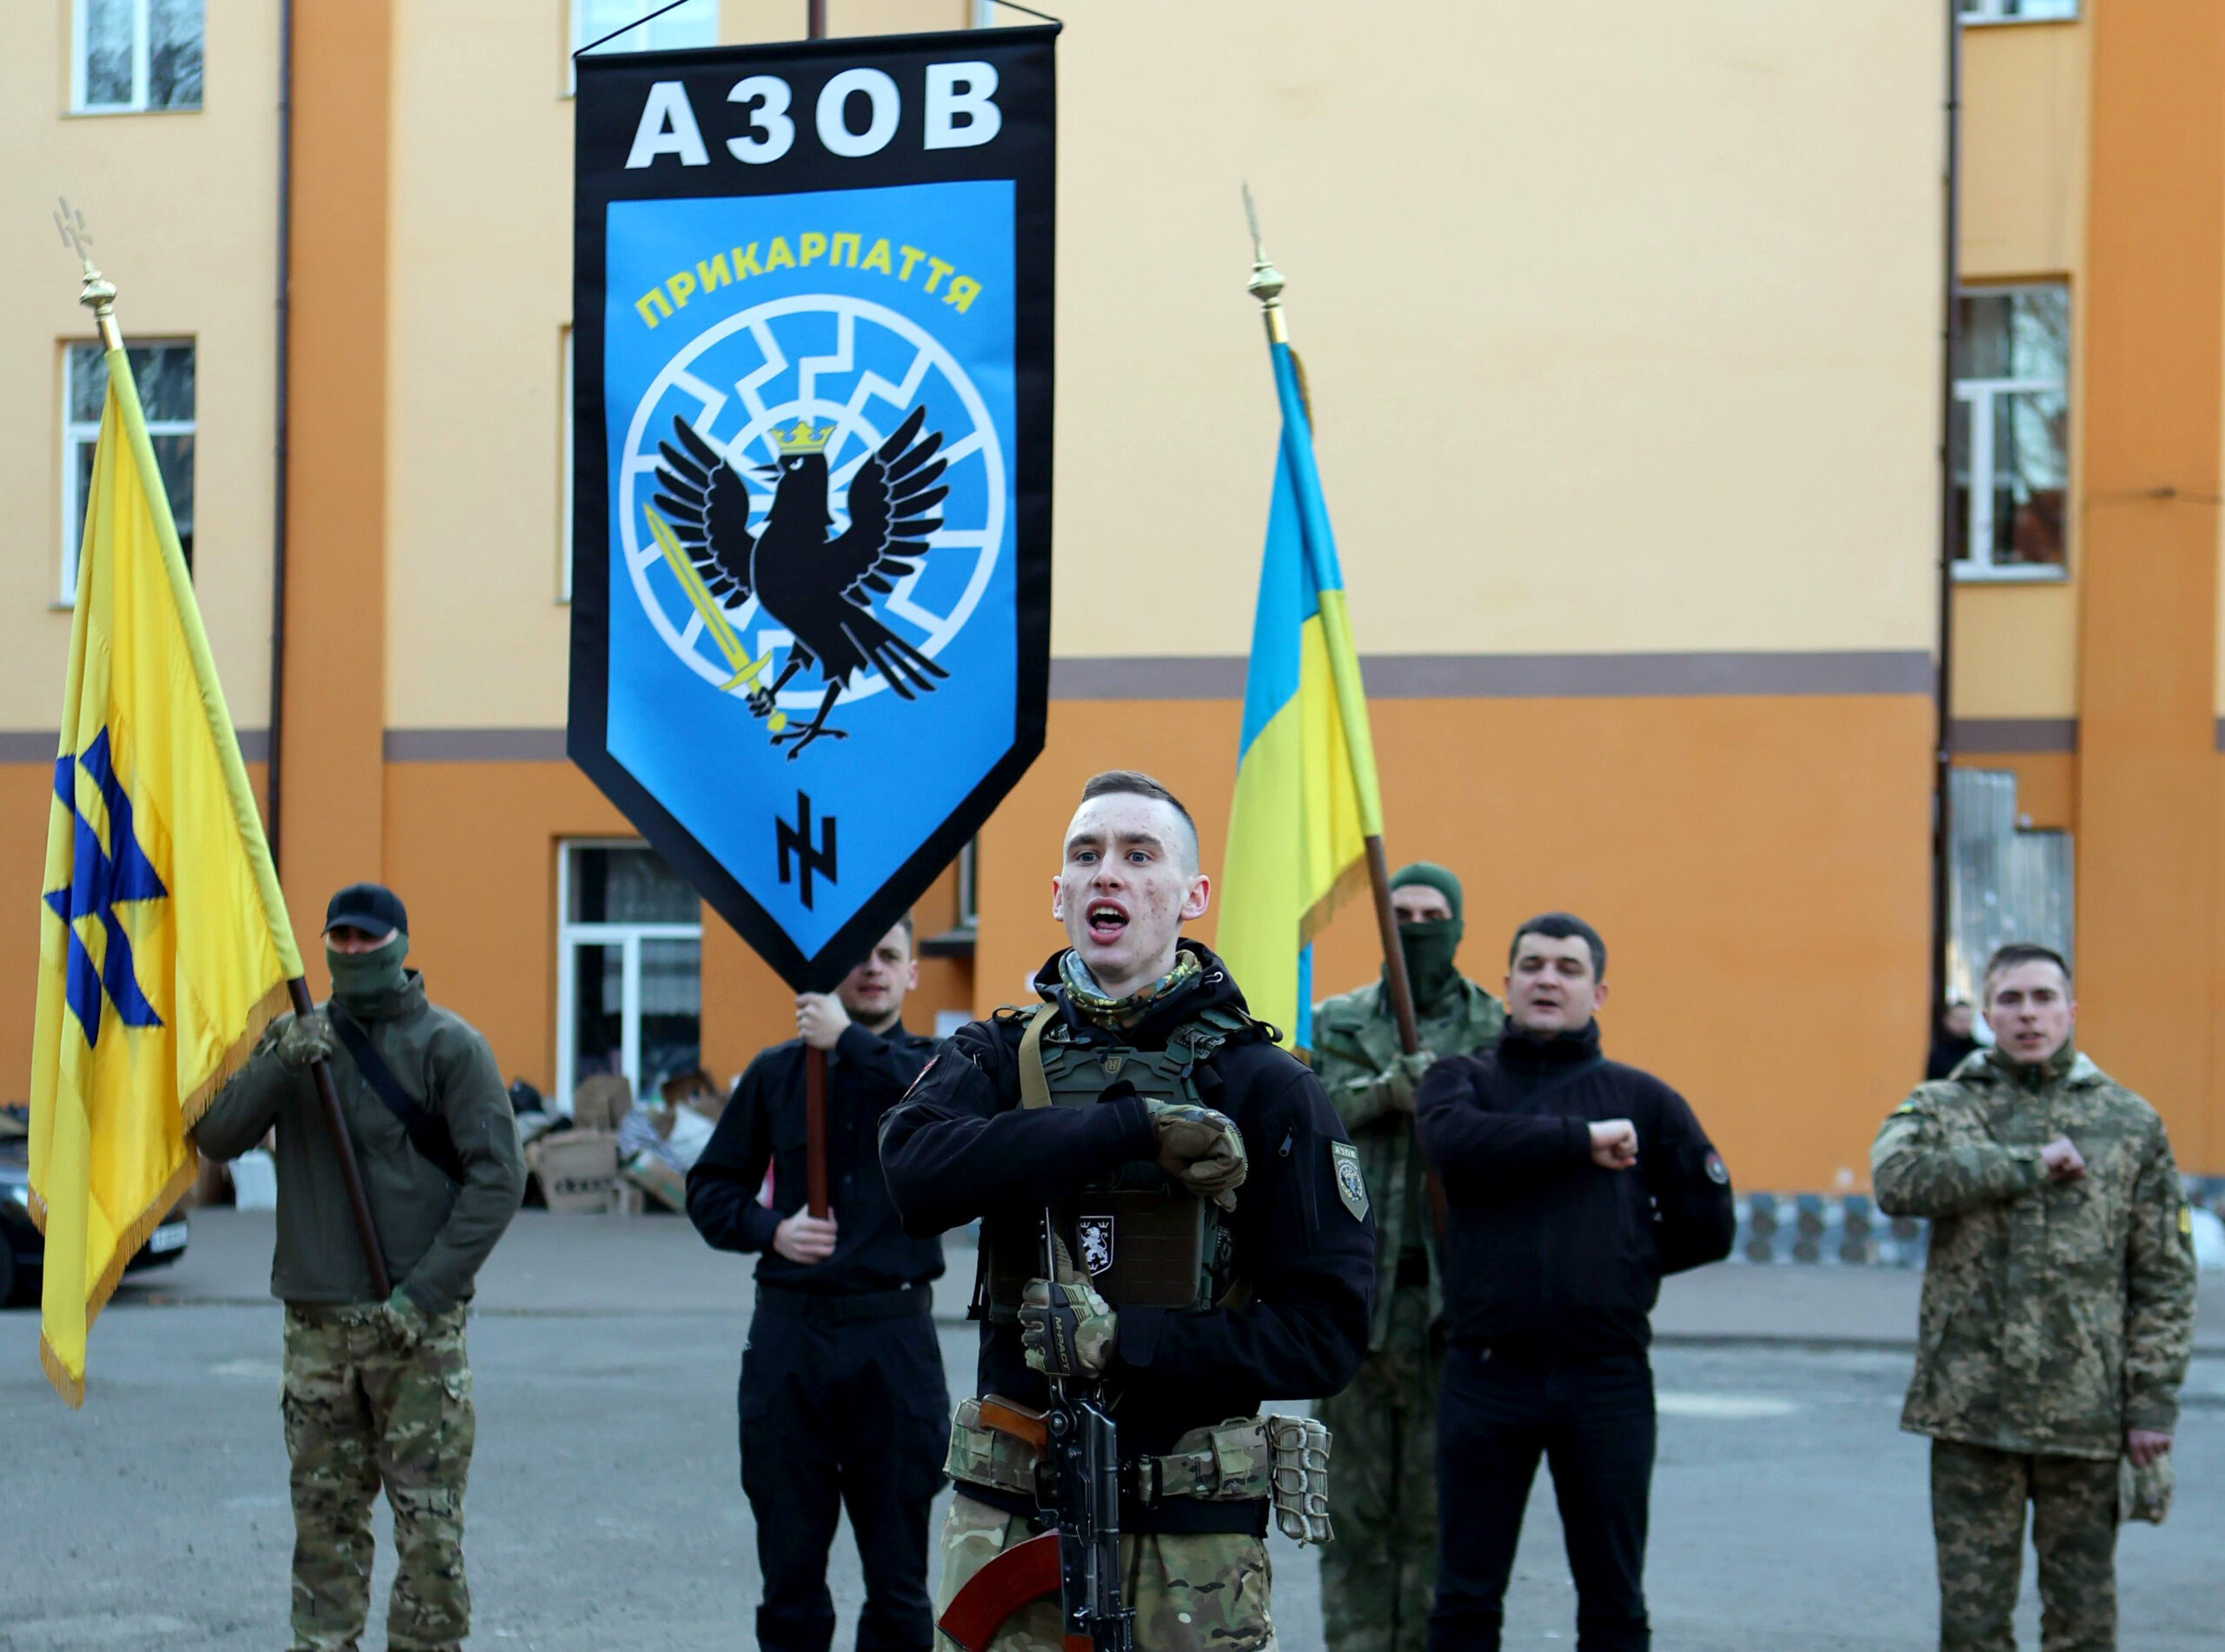 Das ukrainische Asow-Regiment, links auf der Fahne das Wolfsangel-Symbol der SS.